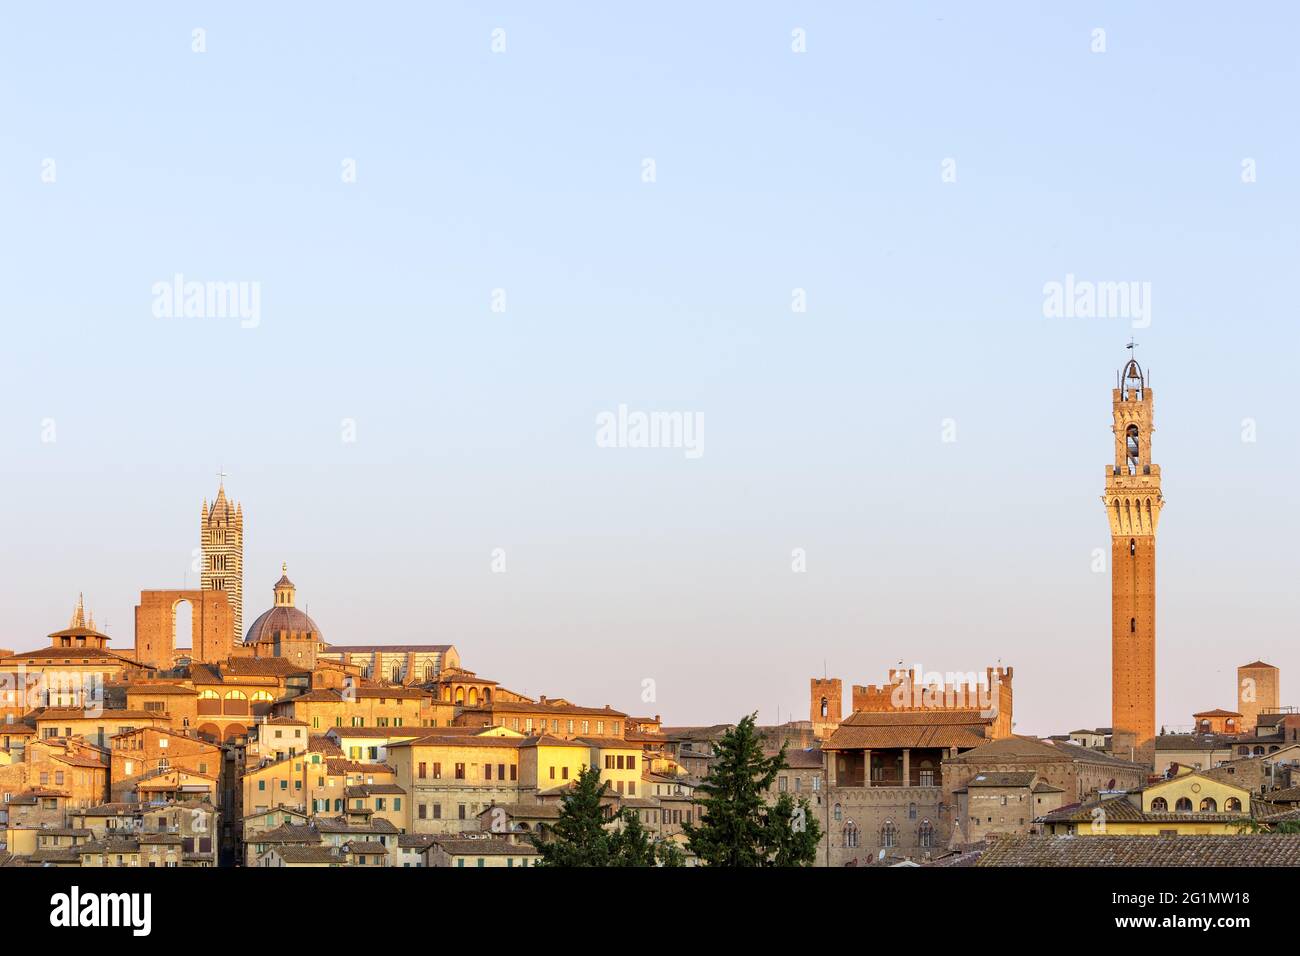 Italie, Toscane, Sienne, centre historique classé au patrimoine mondial de l'UNESCO, vue panoramique sur la vieille ville avec cathédrale notre Dame de l'Assomption et Torre del Mangia Banque D'Images